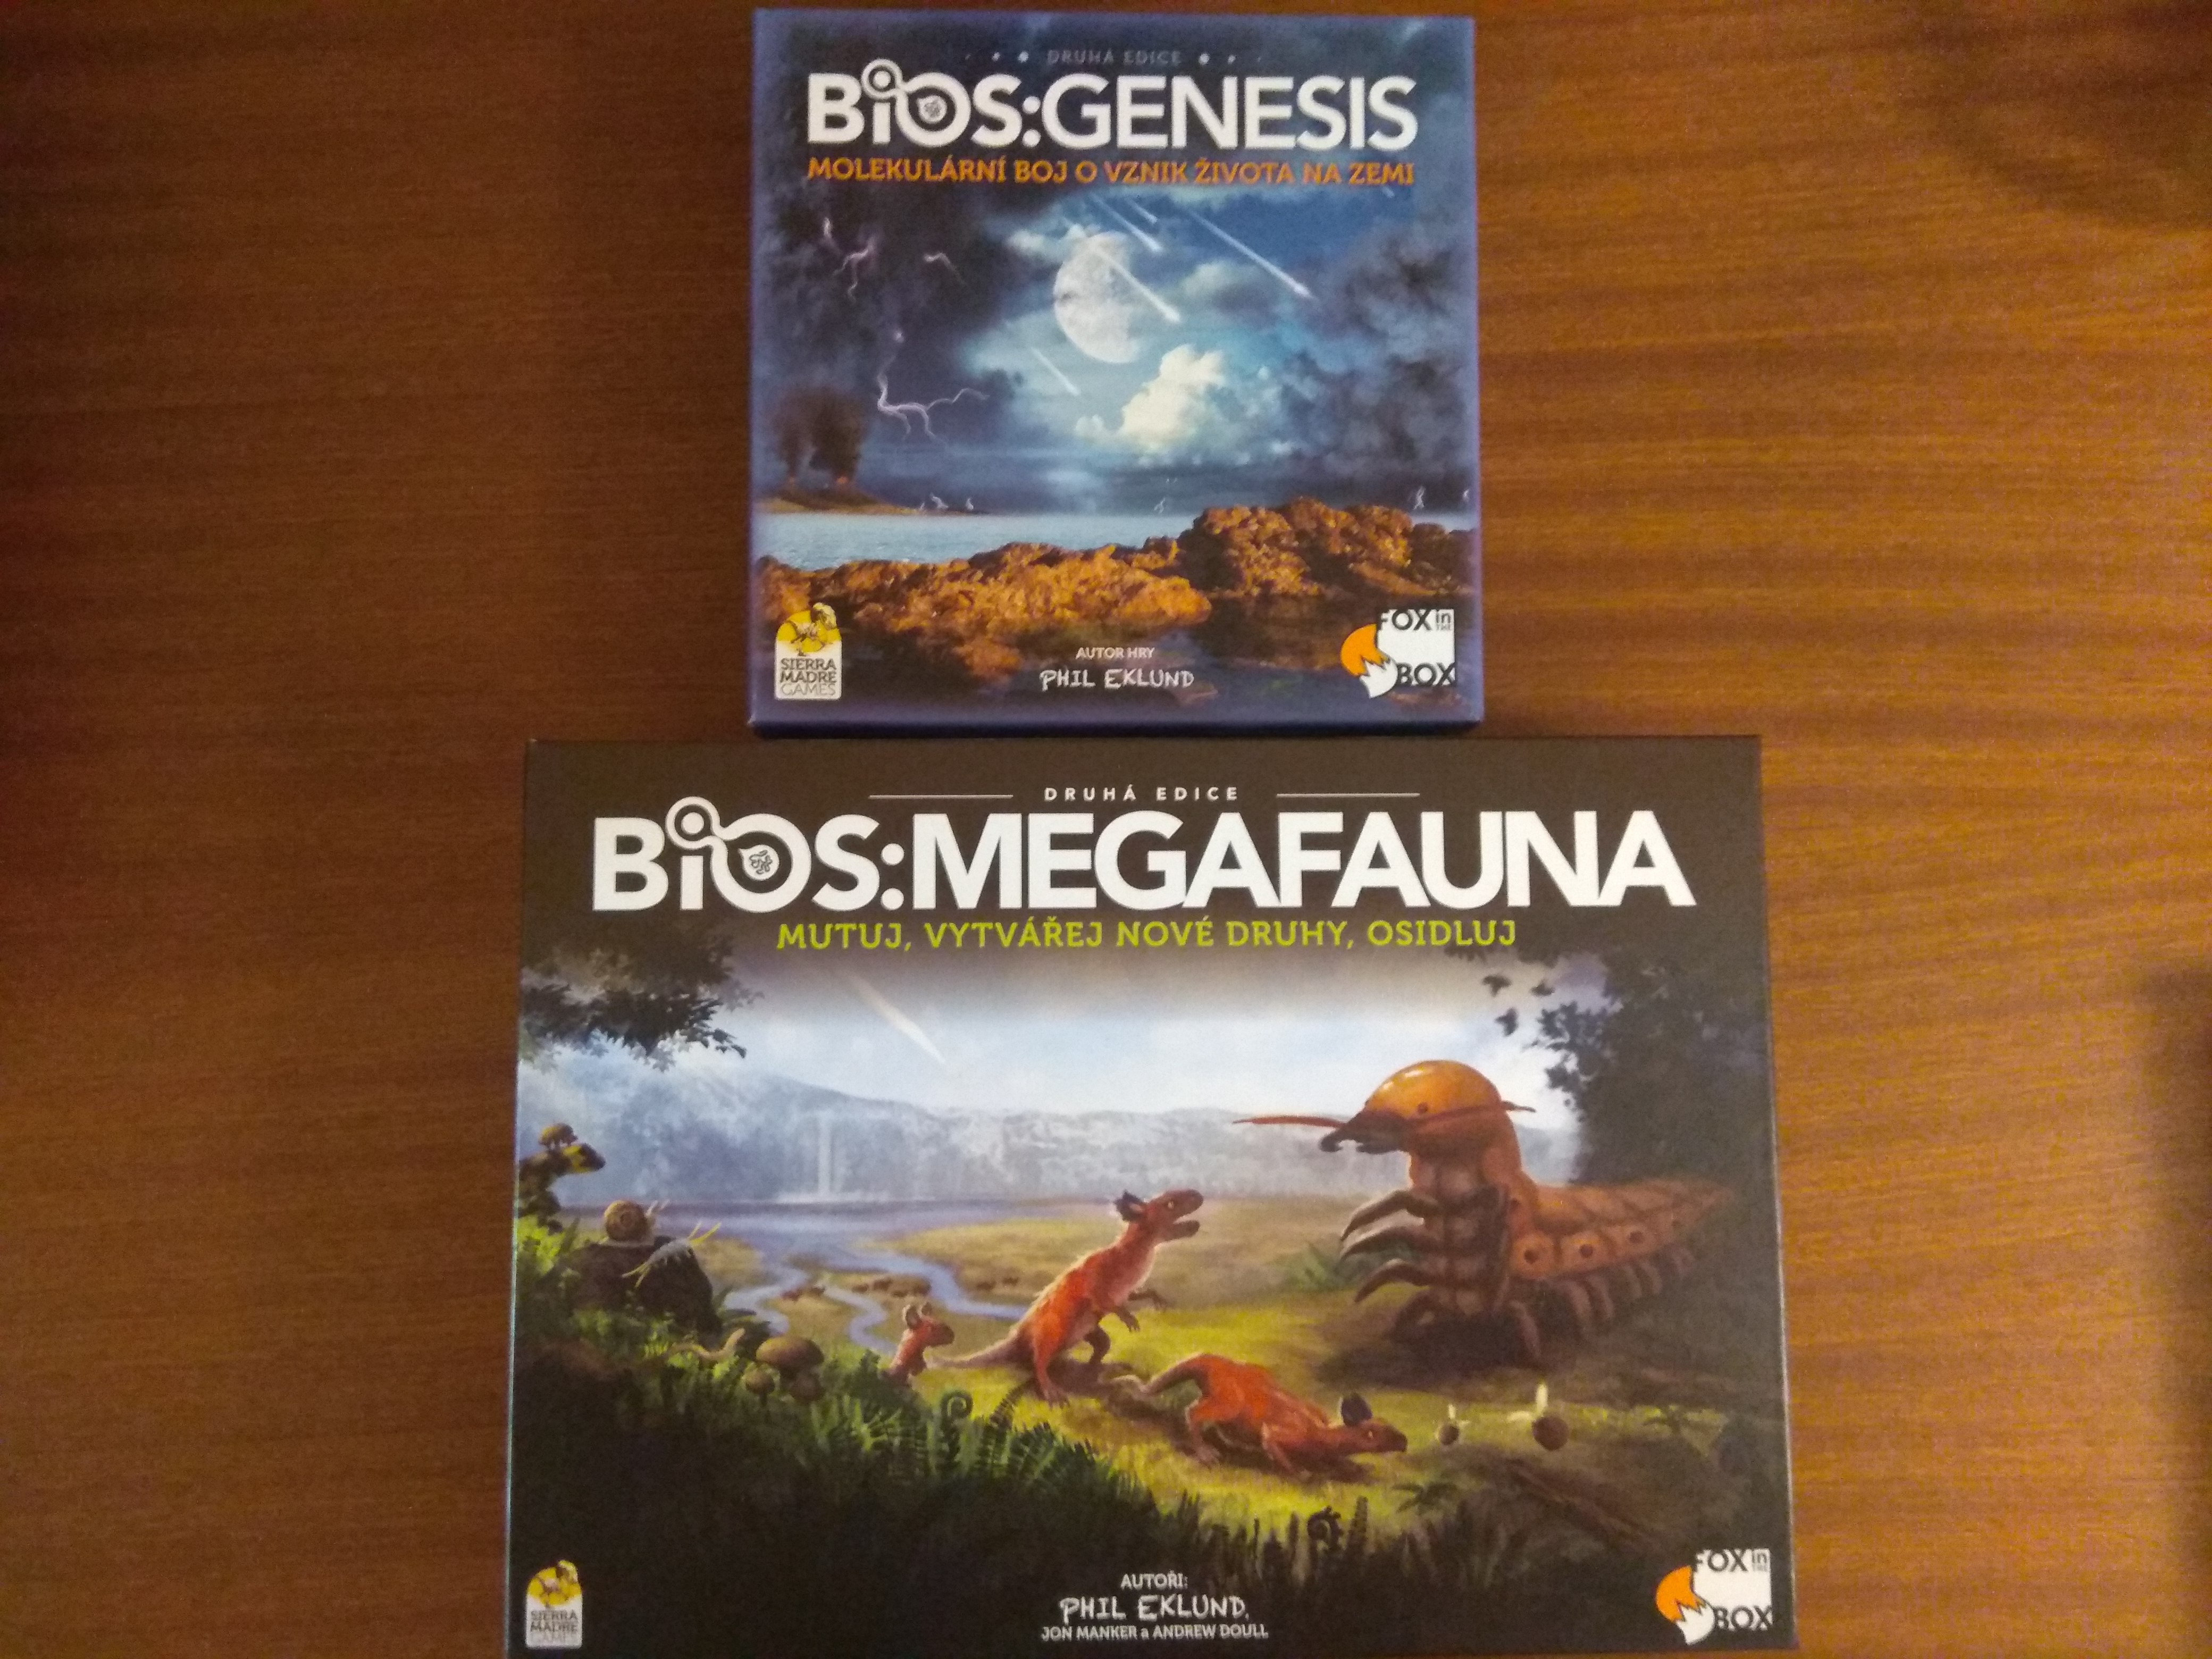 BIOS: Genesis a Megafauna